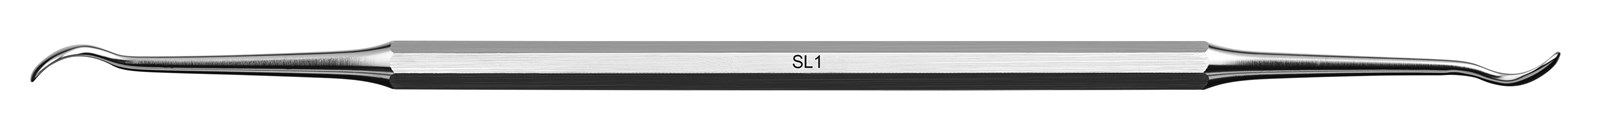 Instrument pro sinus lift - SL1, ADEP šedý